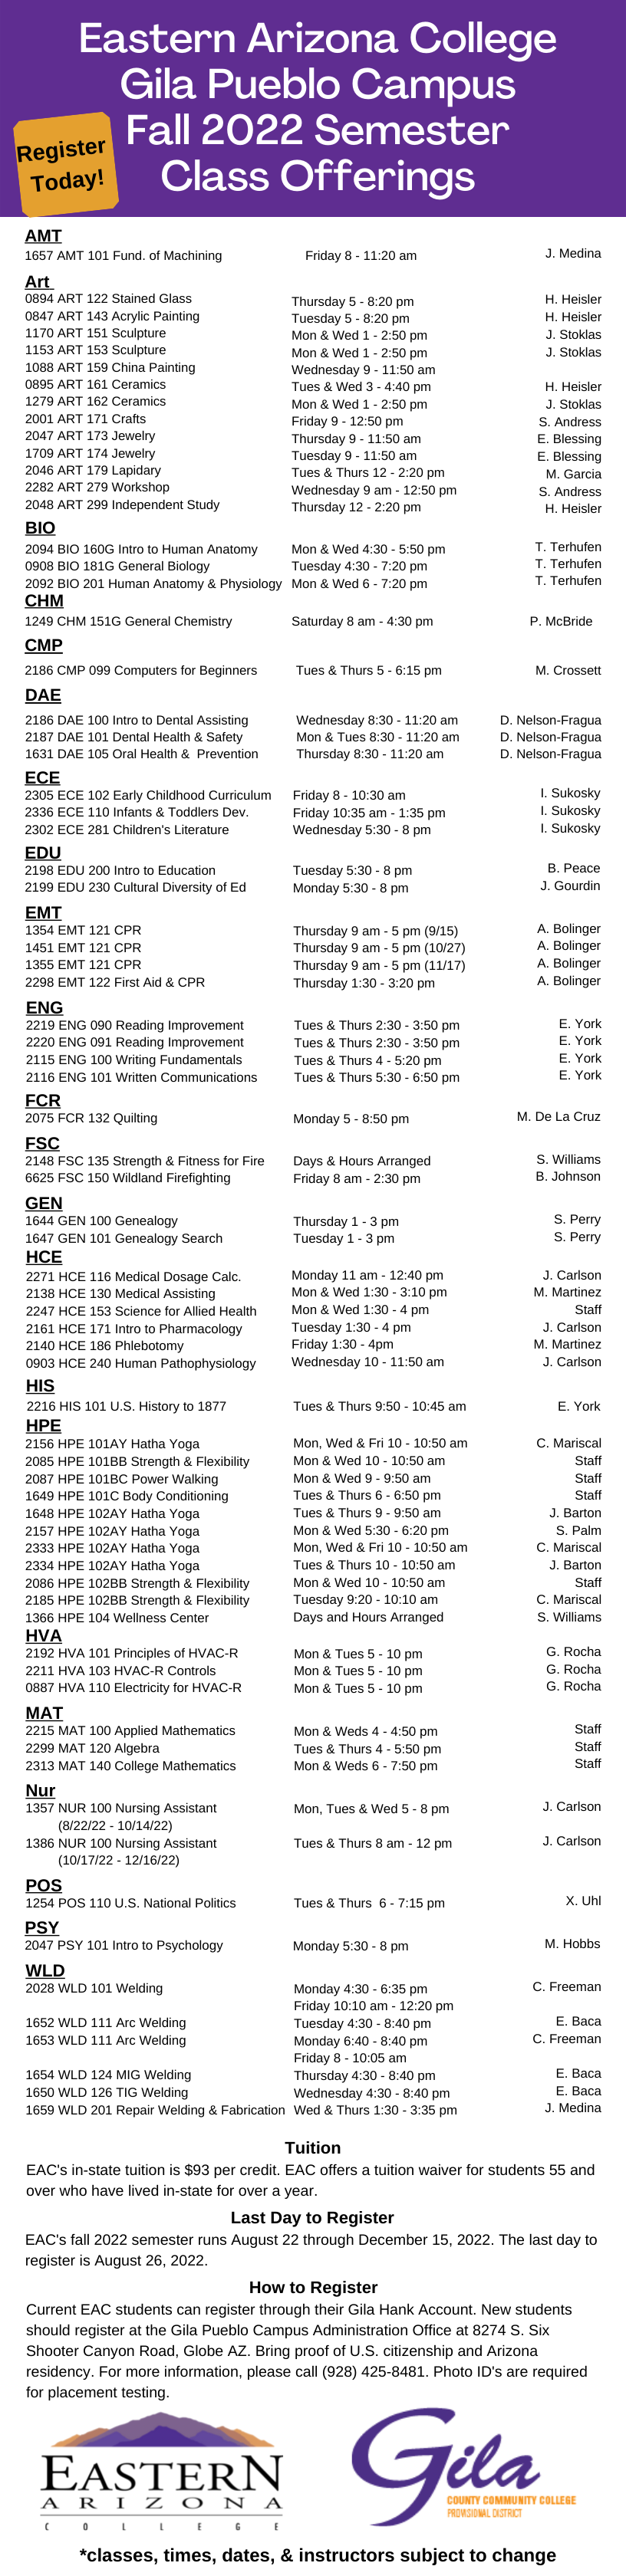 Gila Pueblo Campus Class Schedule